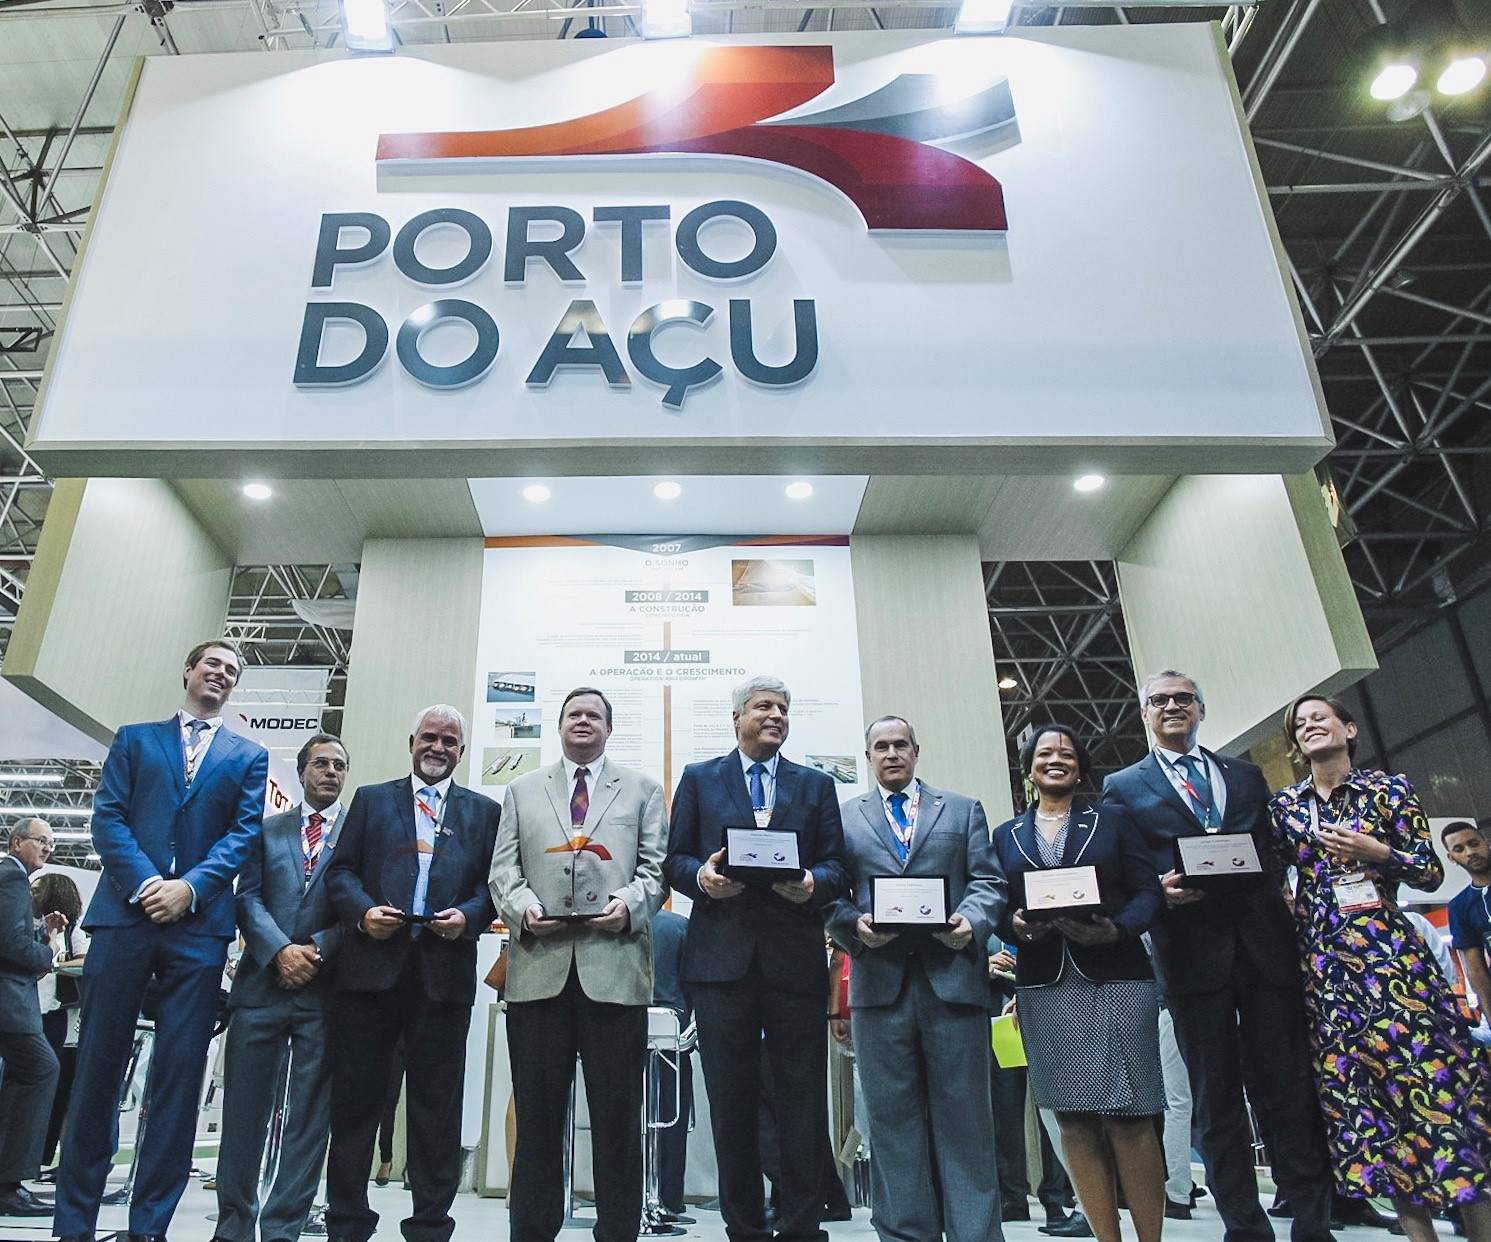 Porto do Acu 1 Rio OG 2018